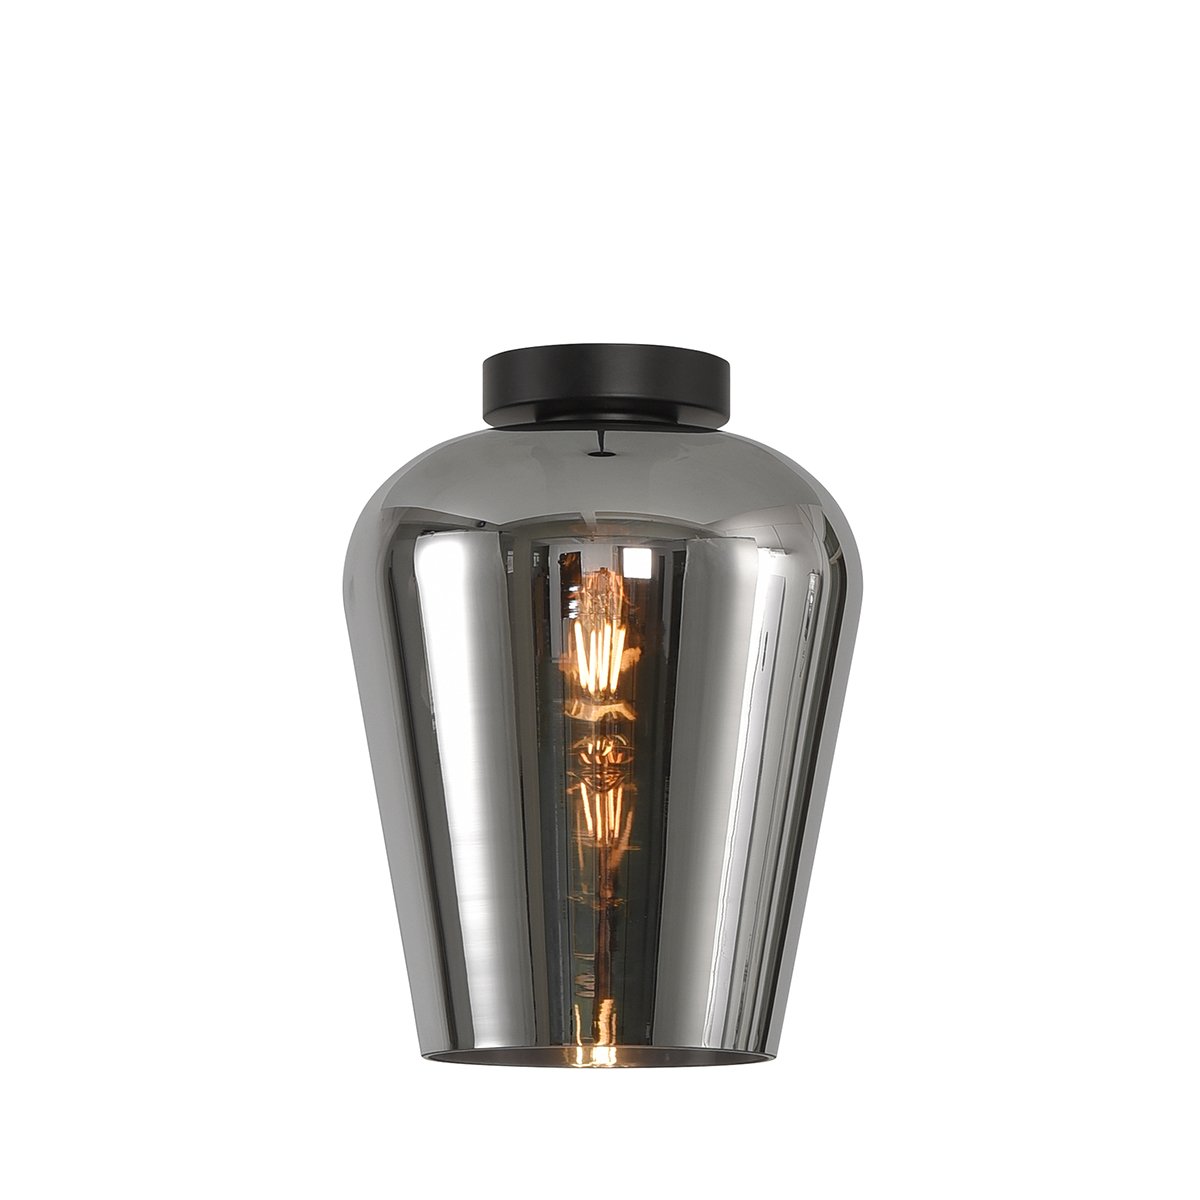 Loftlampe kalk sølv glas Agordo - Ø 24 cm